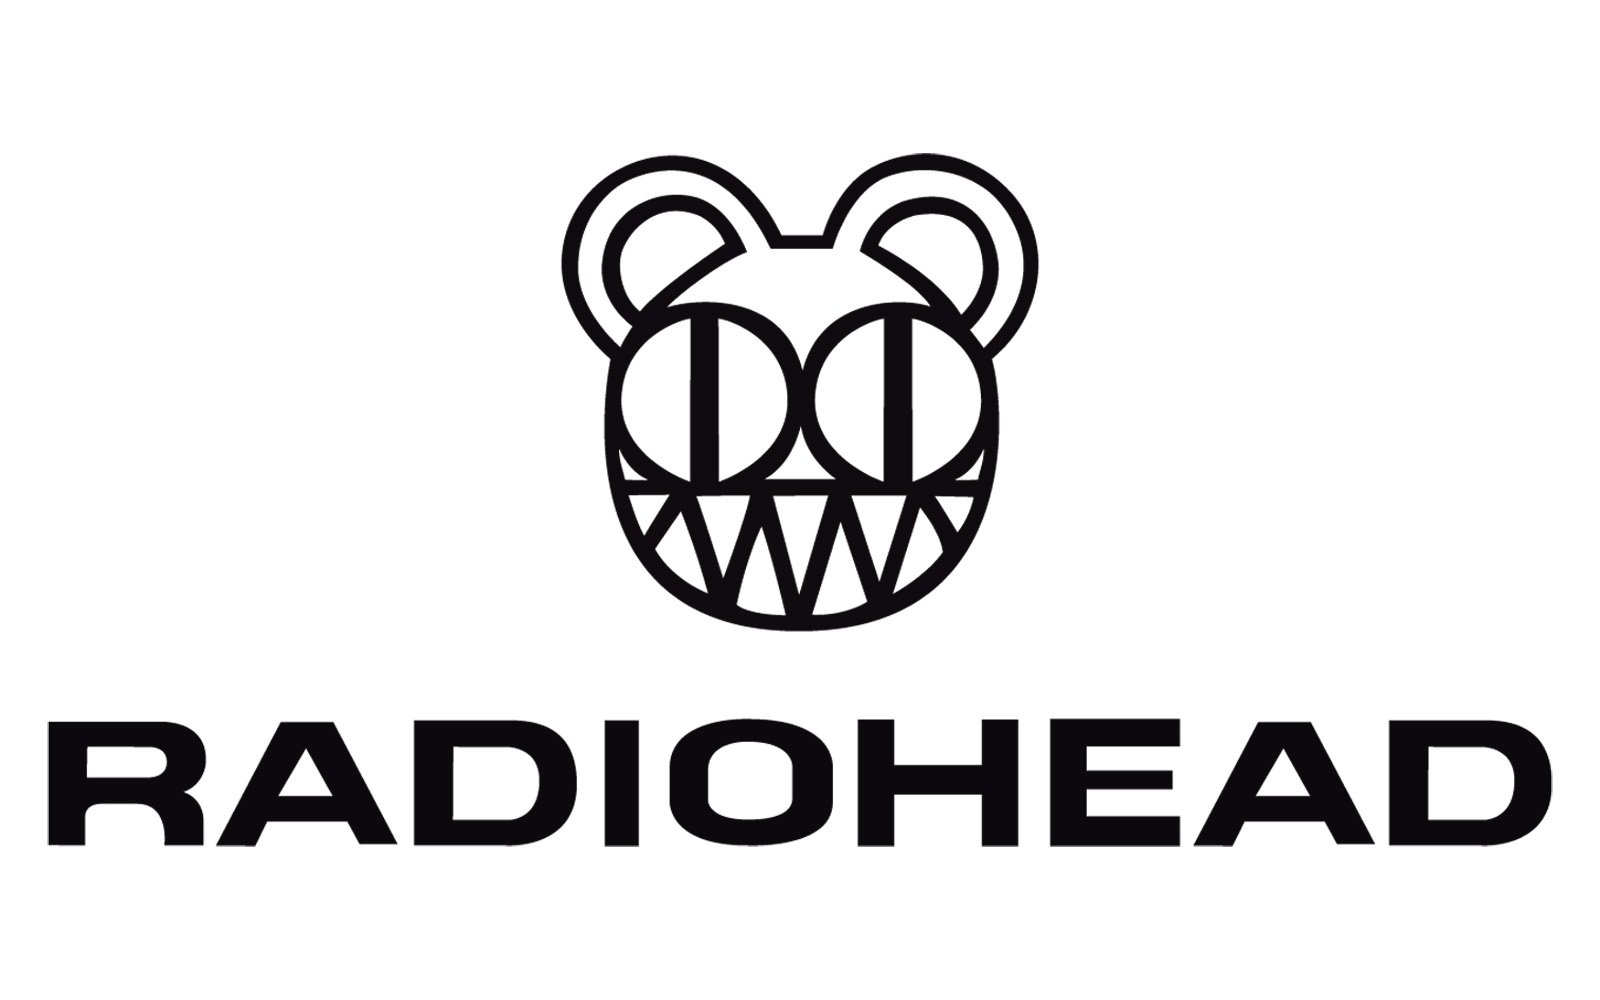 Radiohead logo nike jordan black white